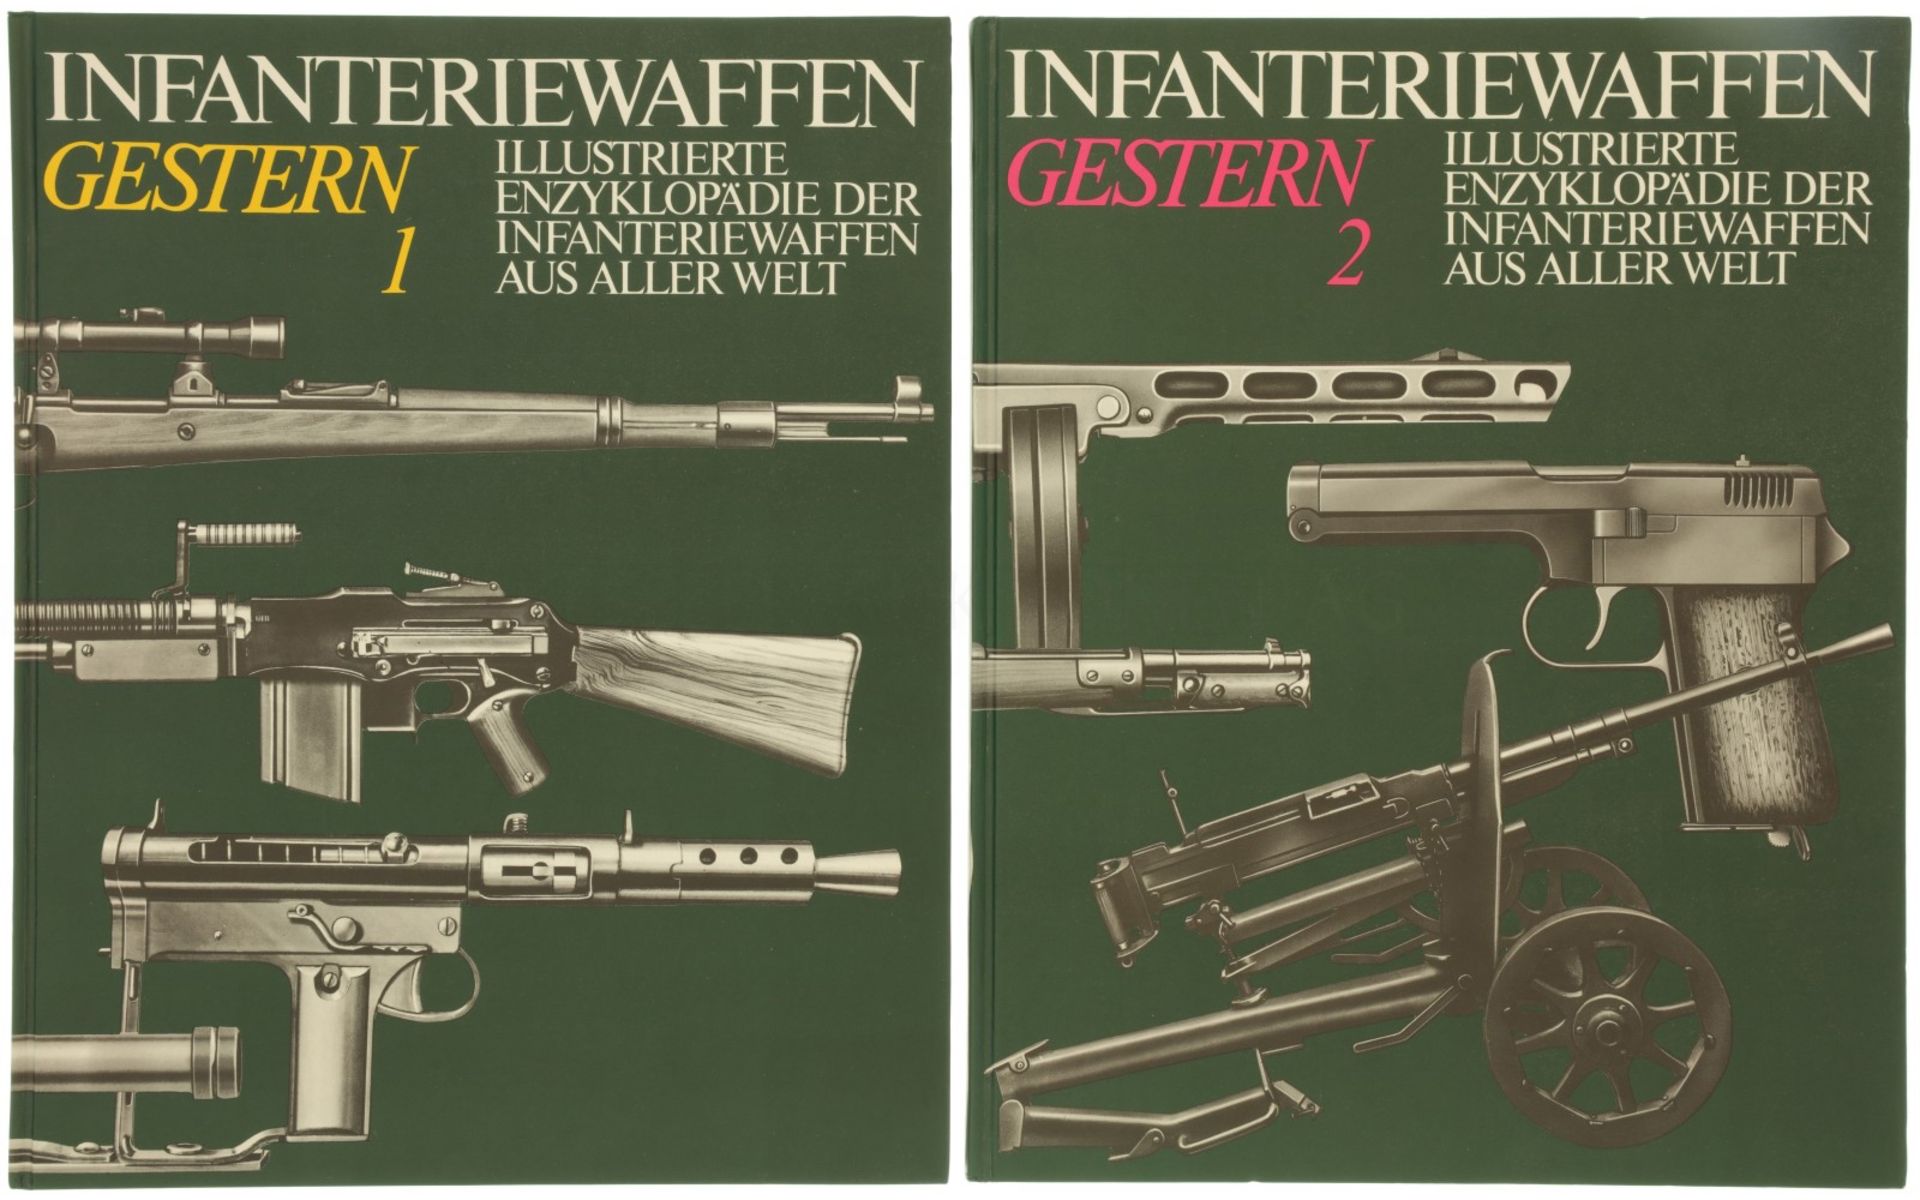 Konvolut von 2 Büchern "Infanteriewaffen gestern"